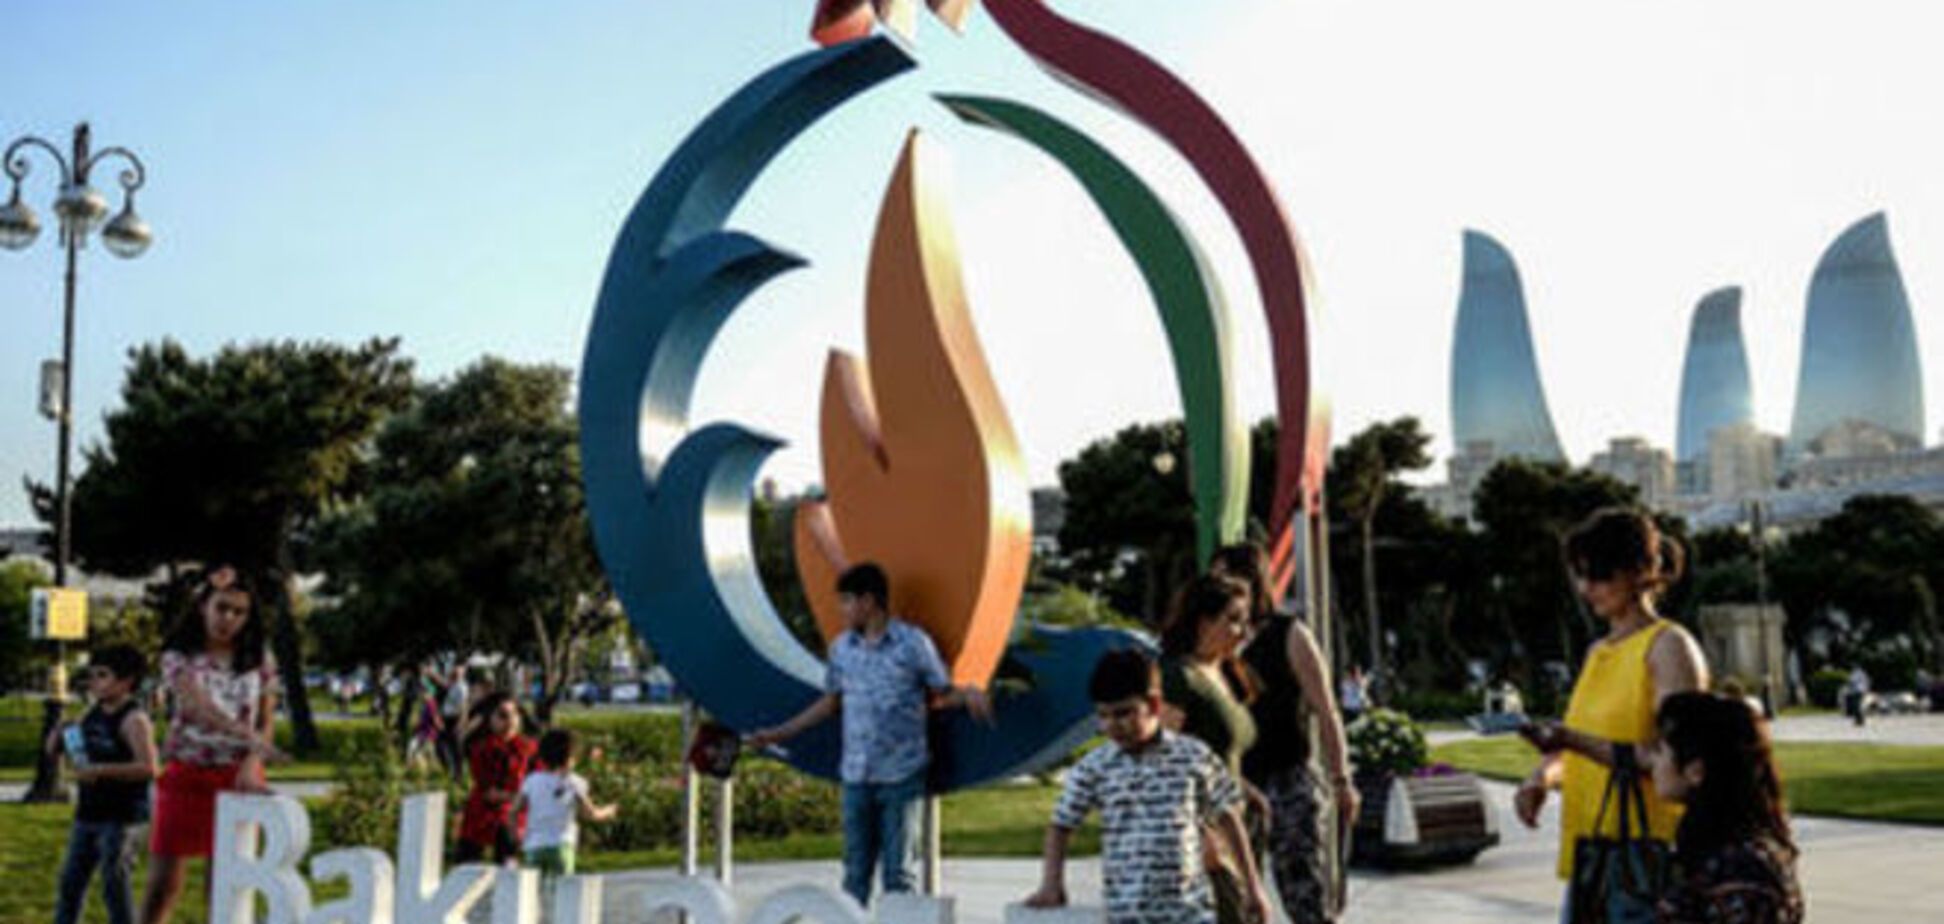 Стартовый день Европейских игр в Баку завершился трагедией: шокирующее видео